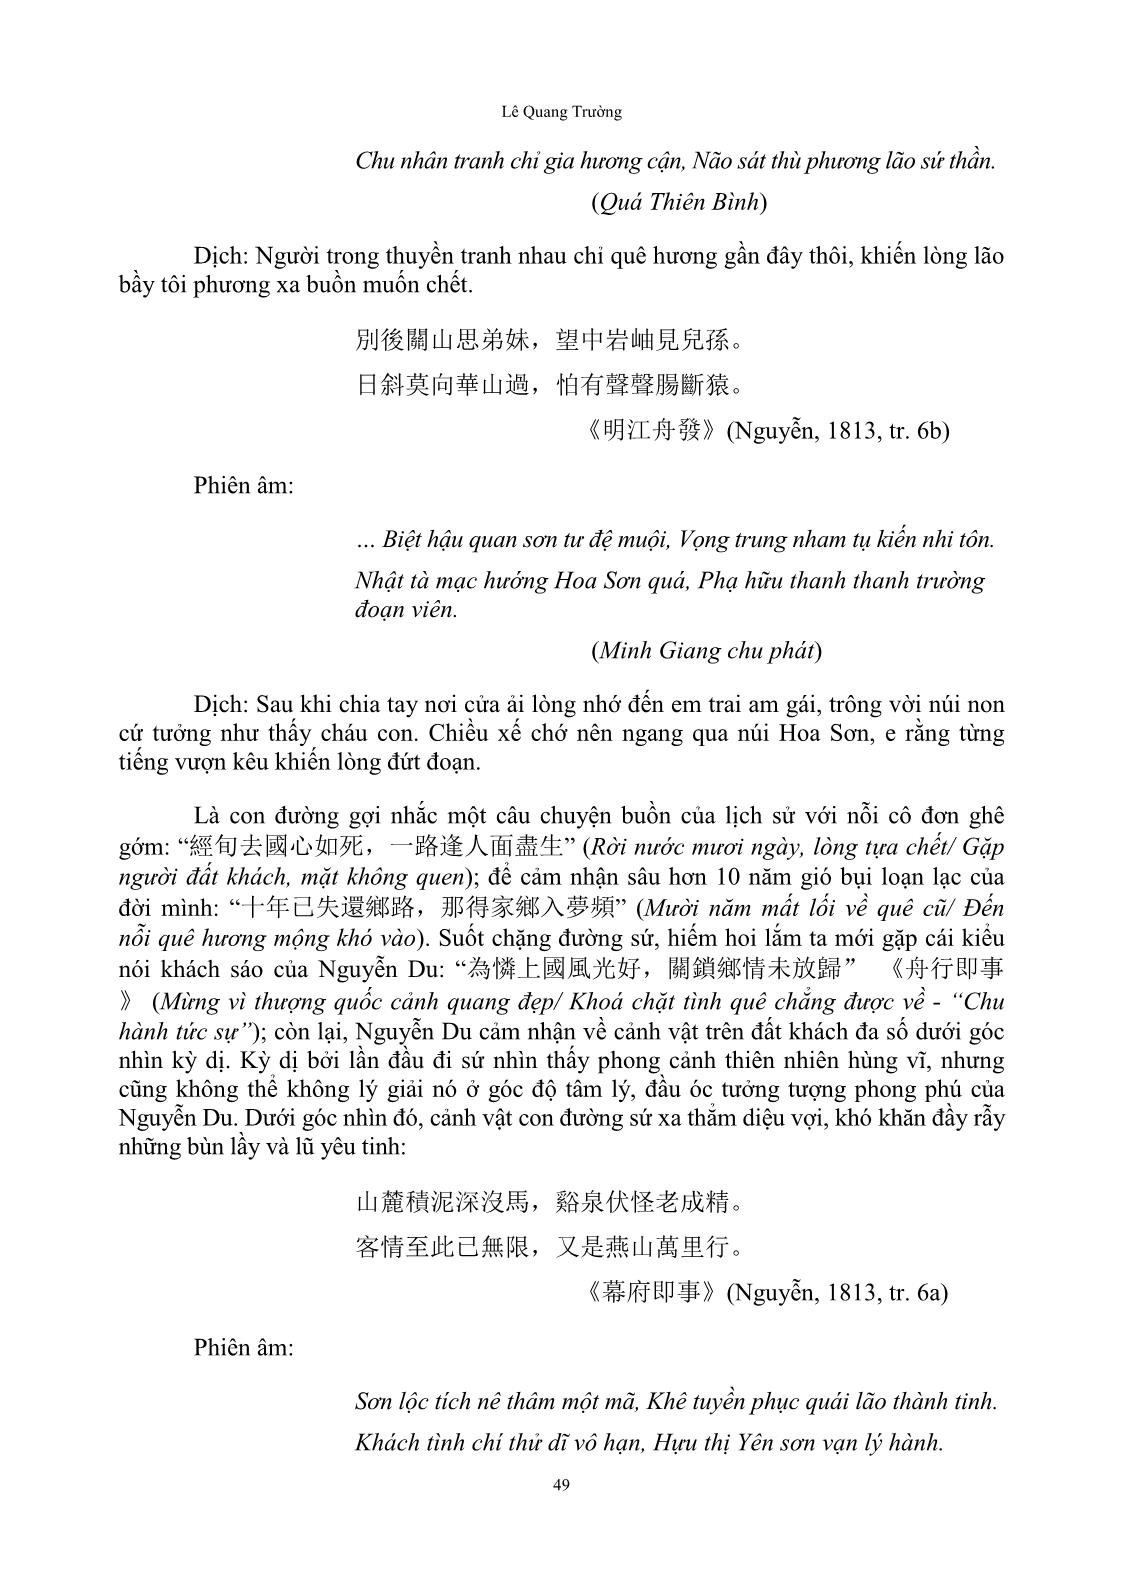 Cảm thức của Nguyễn Du về Trung Quốc Thanh triều trong “Bắc hành tạp lục” trang 7